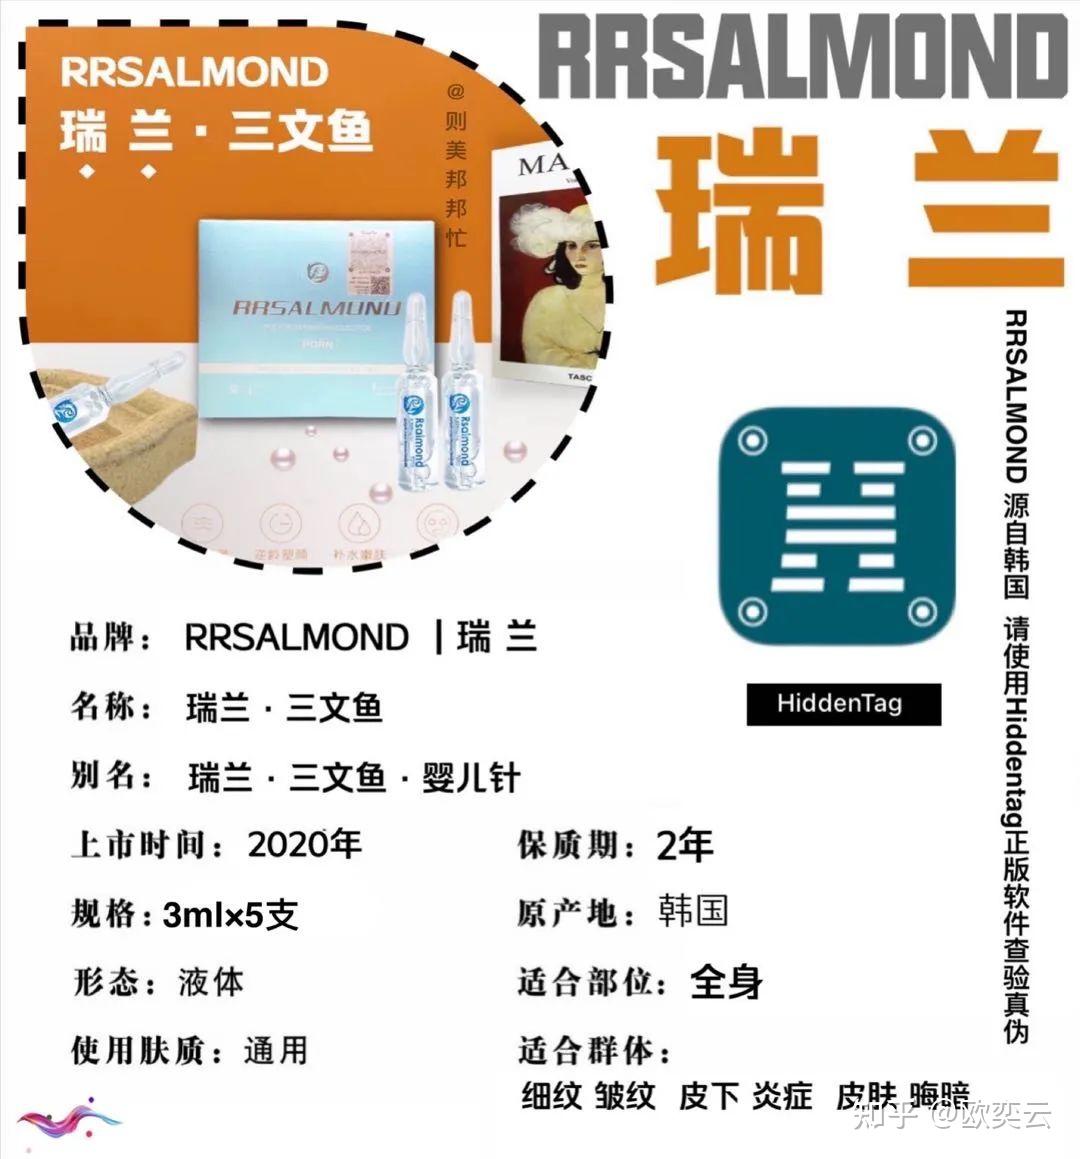 Rrsalnond PDRN 瑞兰三文鱼 - 广州沐凝生物科技有限公司